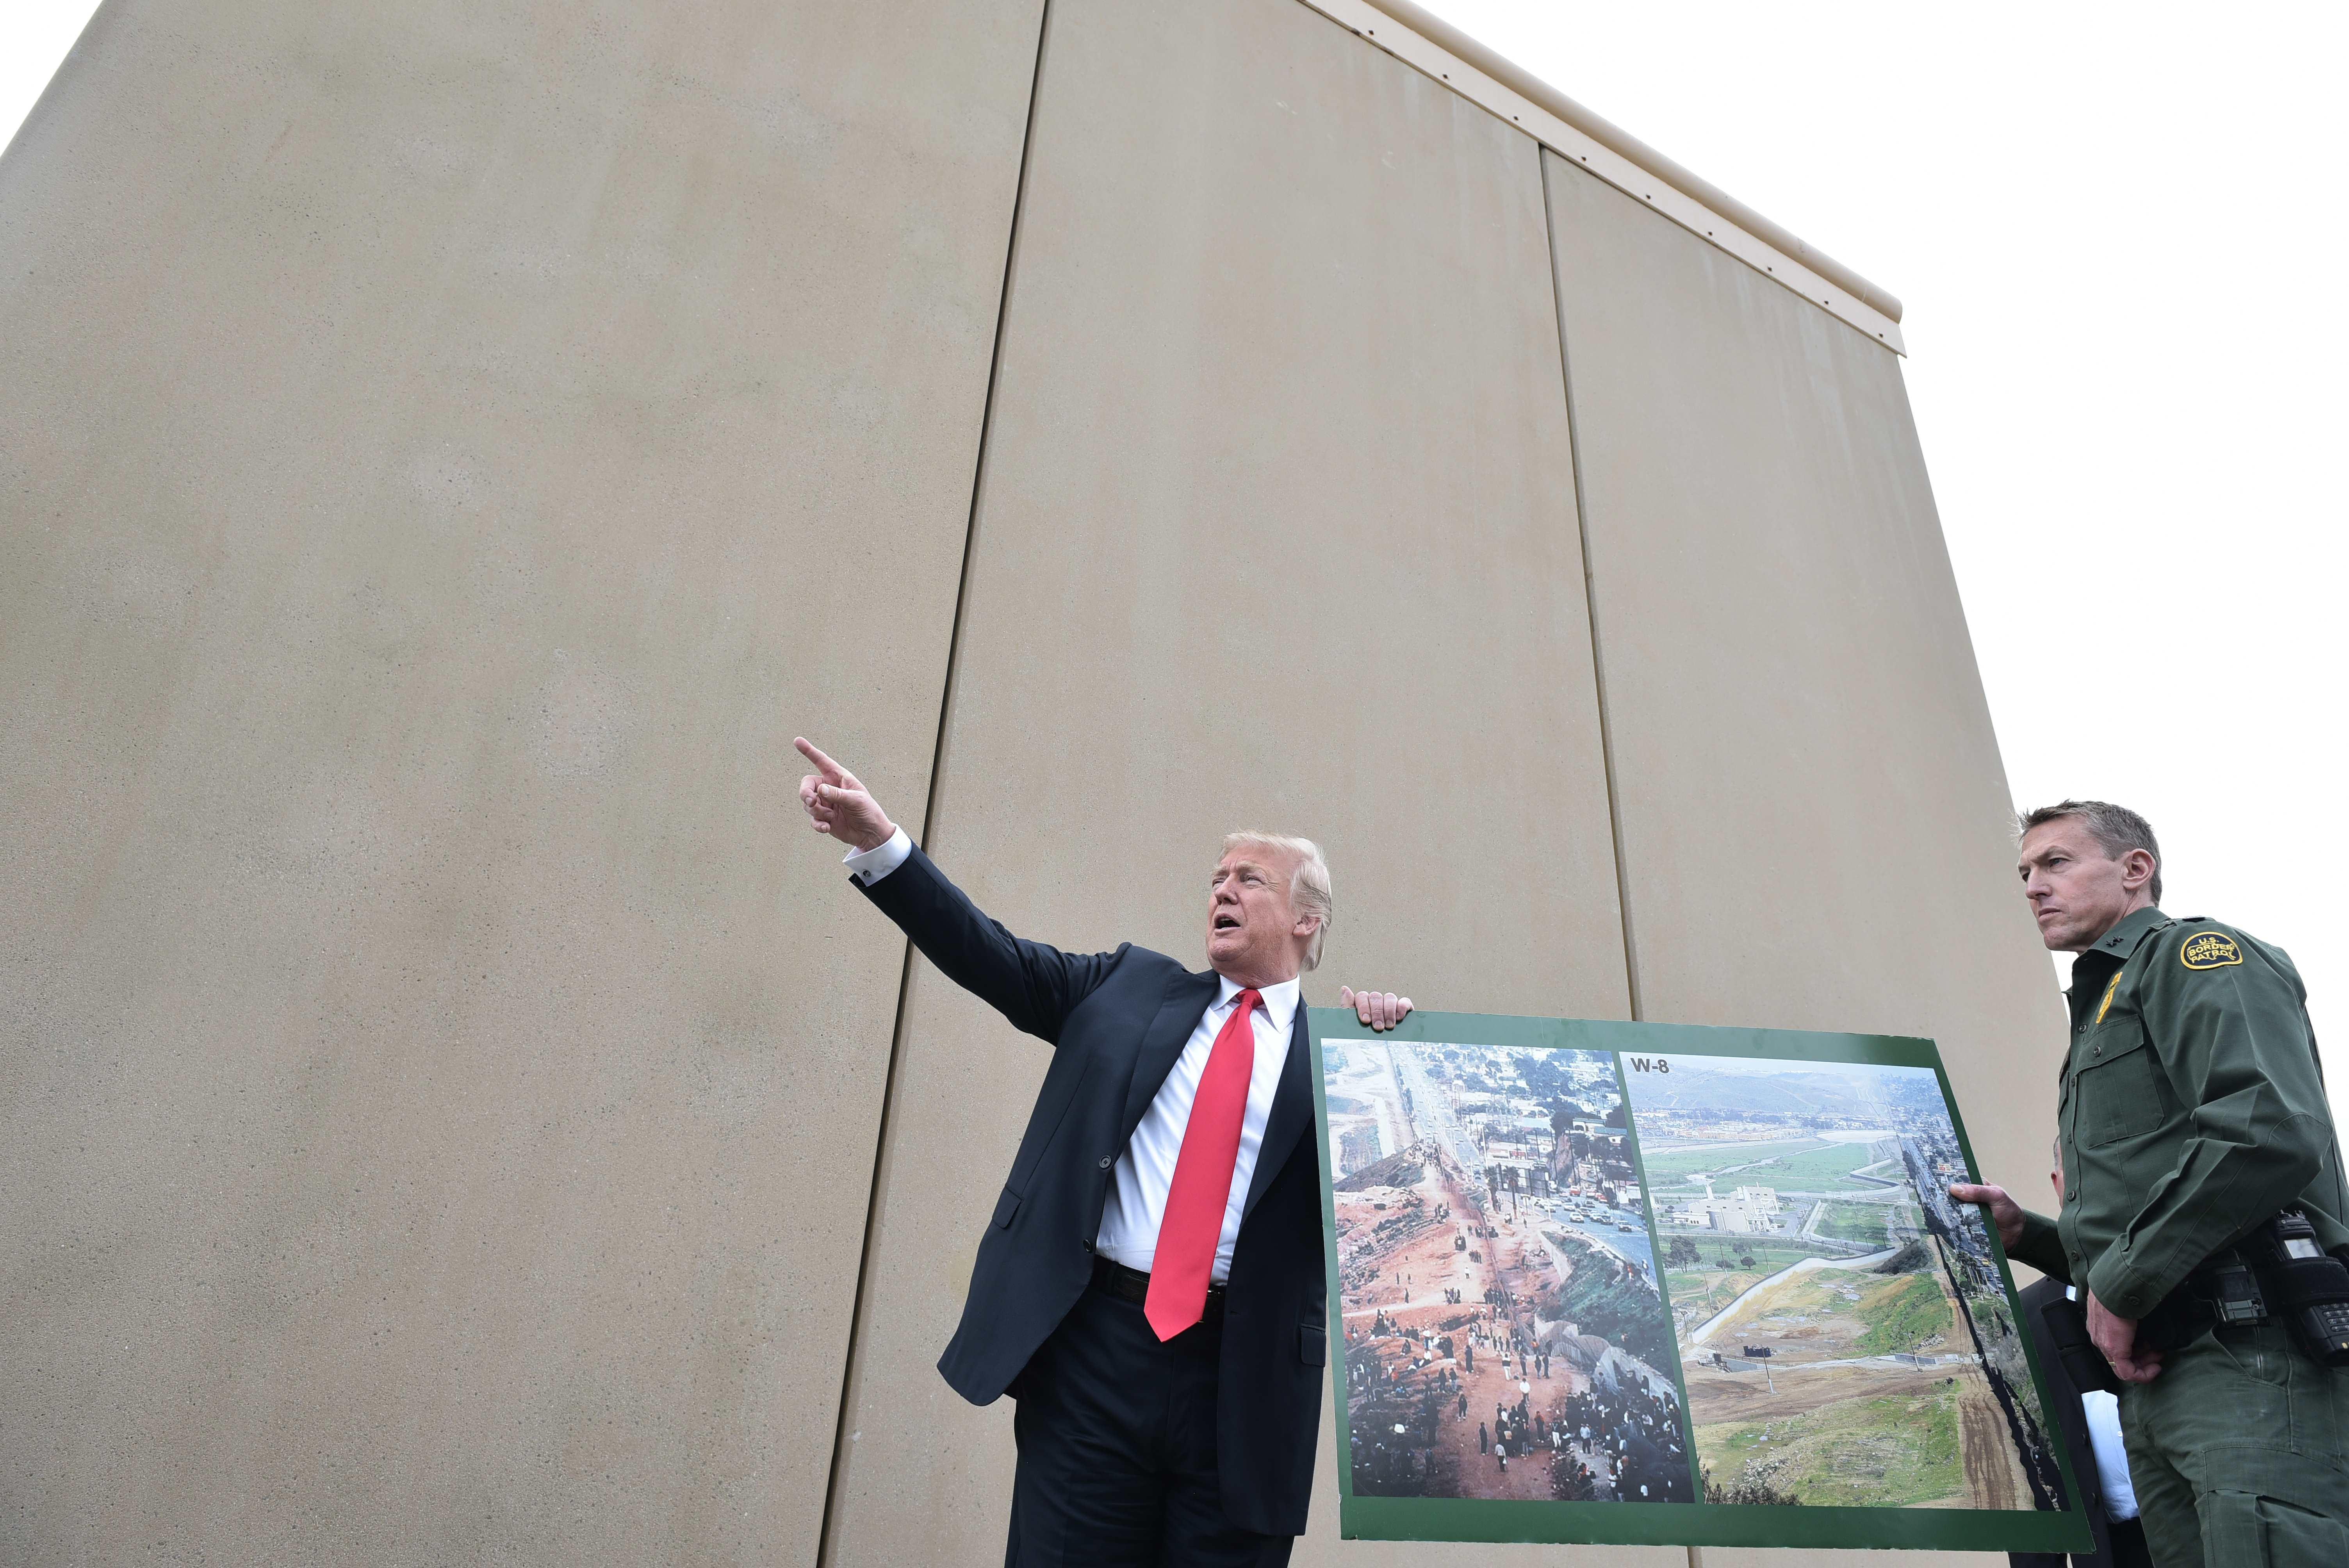 trumps border wall